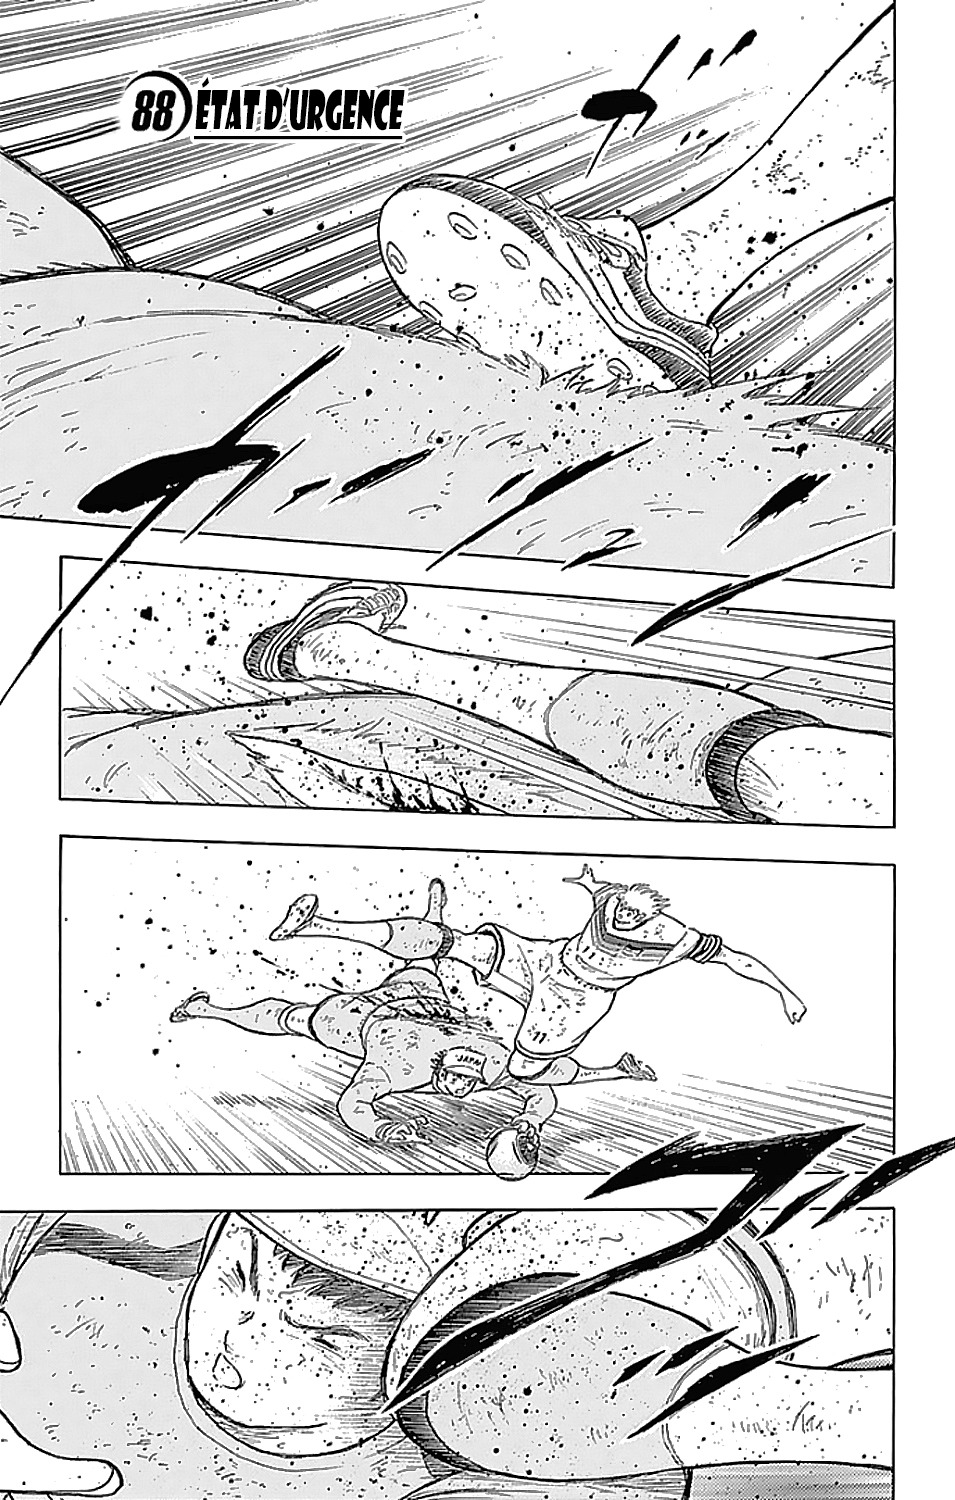 Captain Tsubasa - Rising Sun: Chapter 88 - Page 1